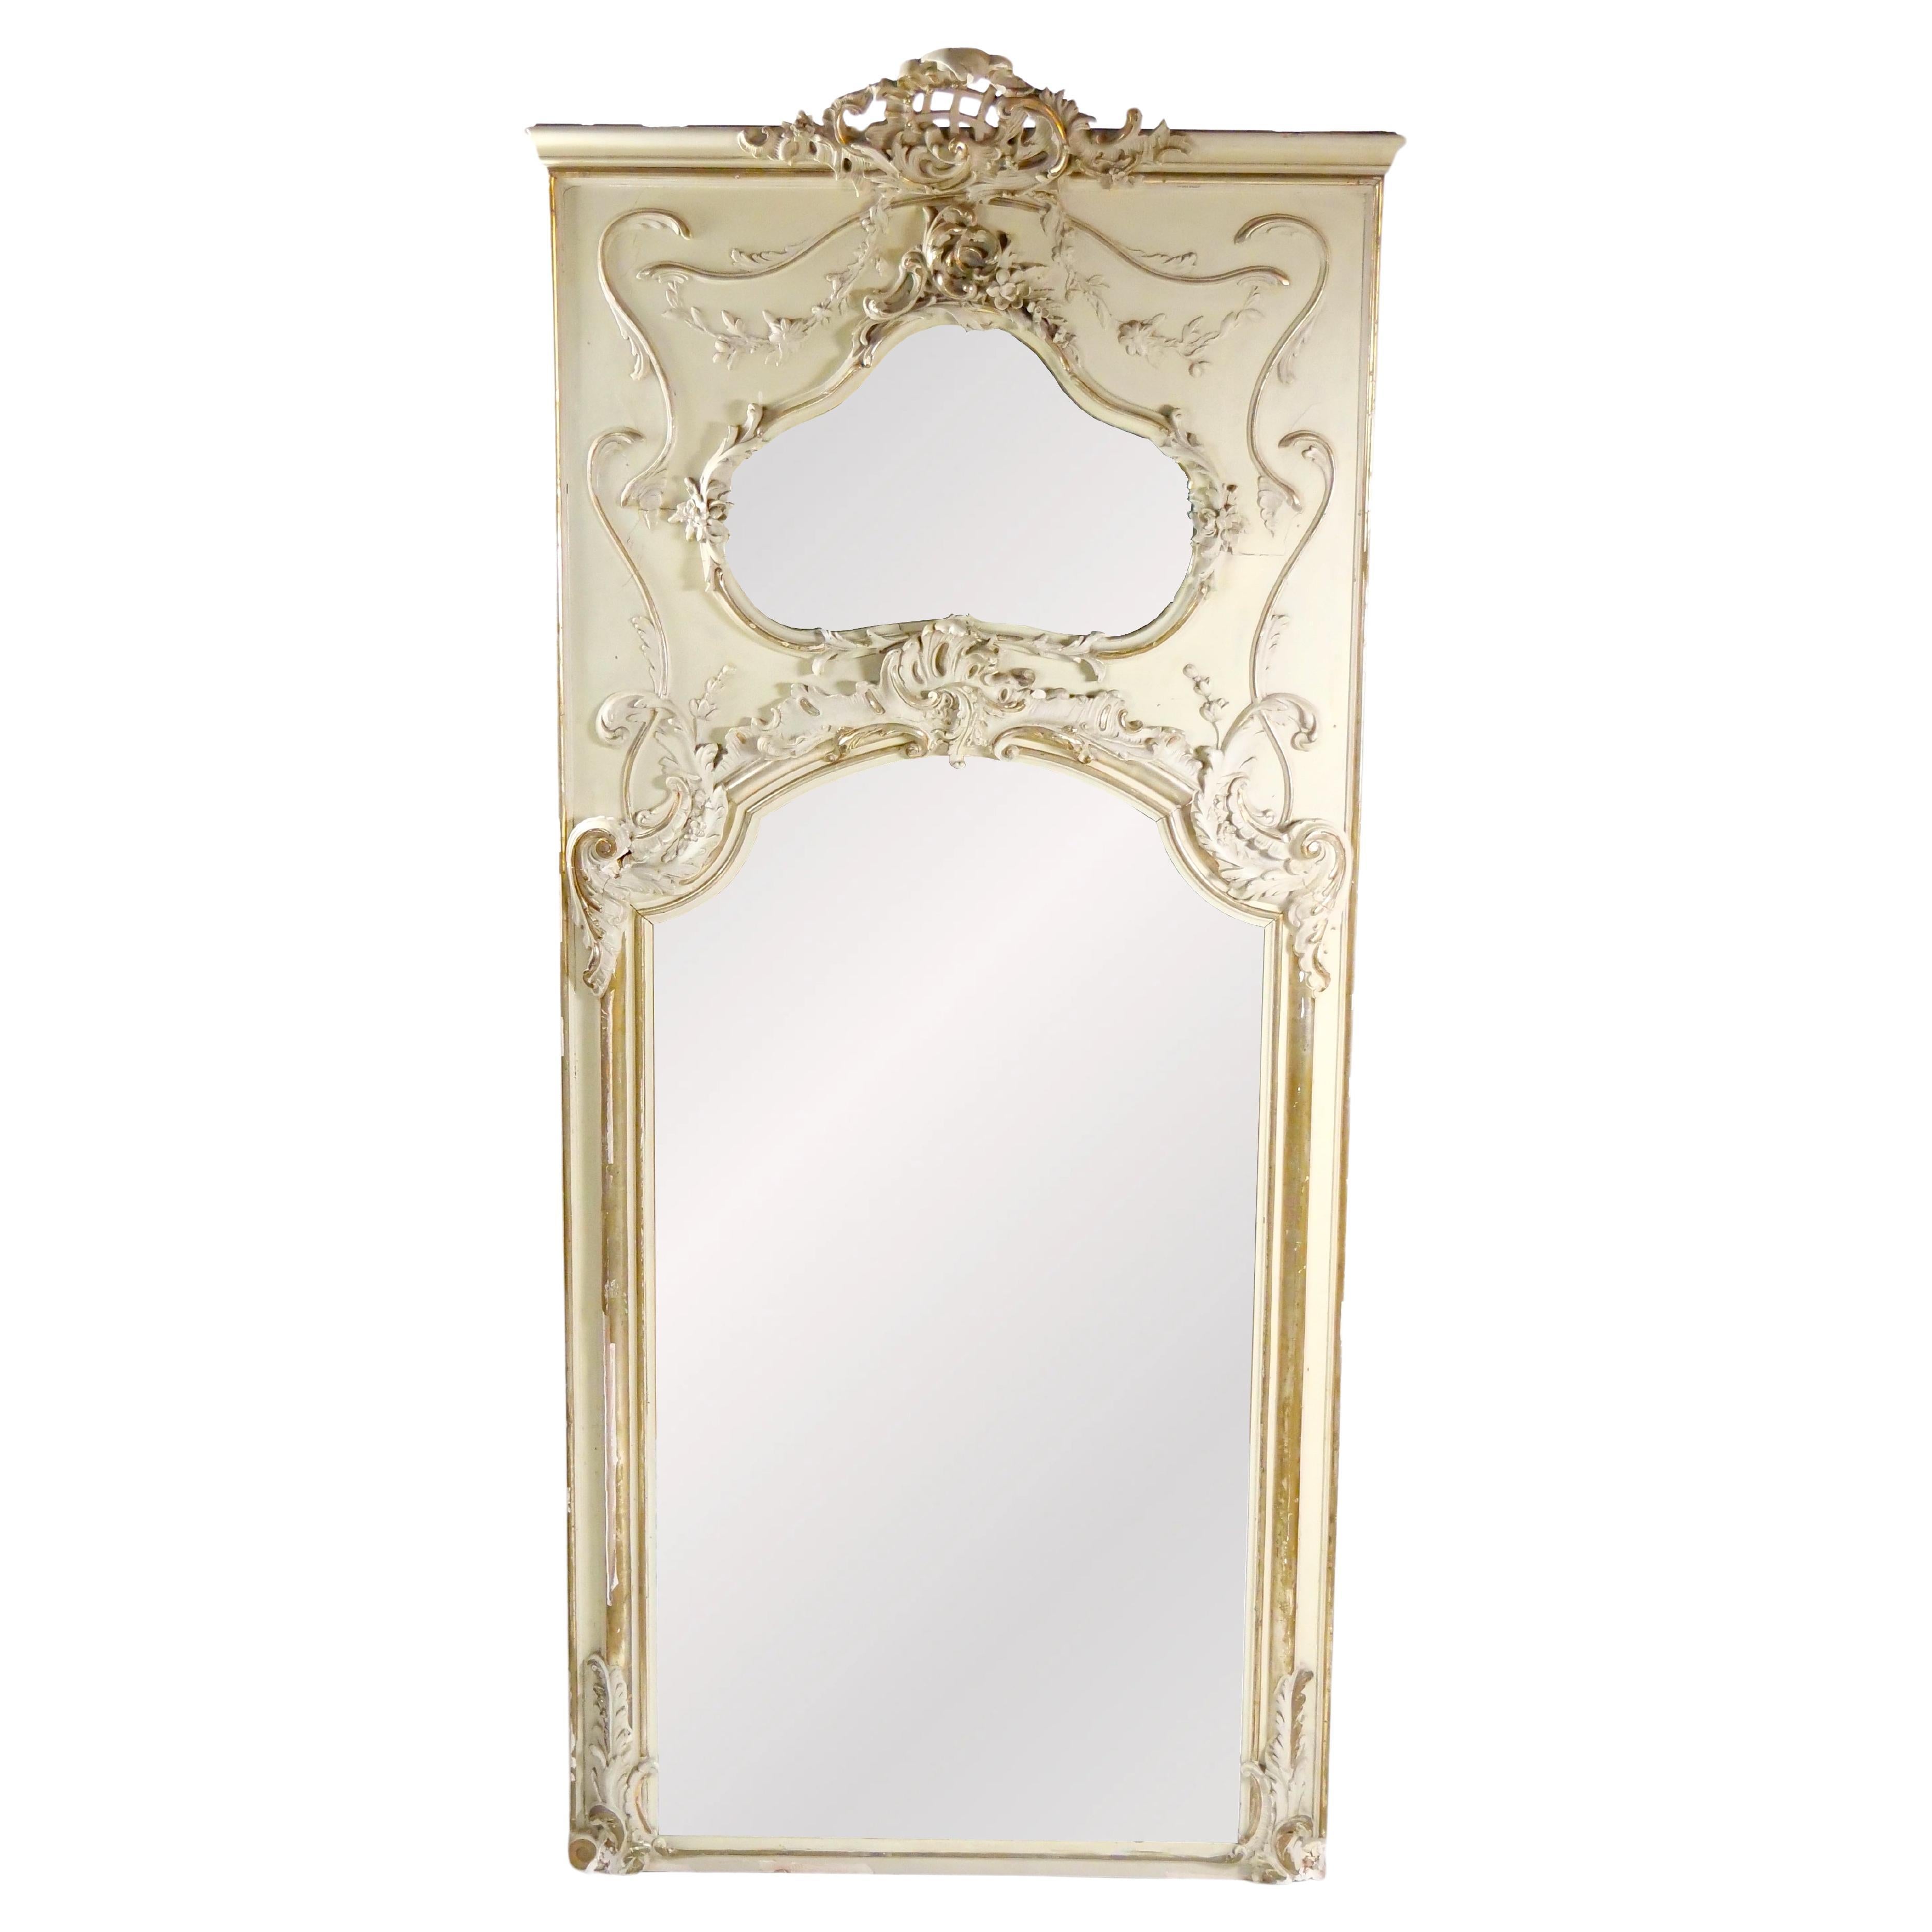 Pier de style Louis XVI doré / peint en blanc  / Miroir Trumeau